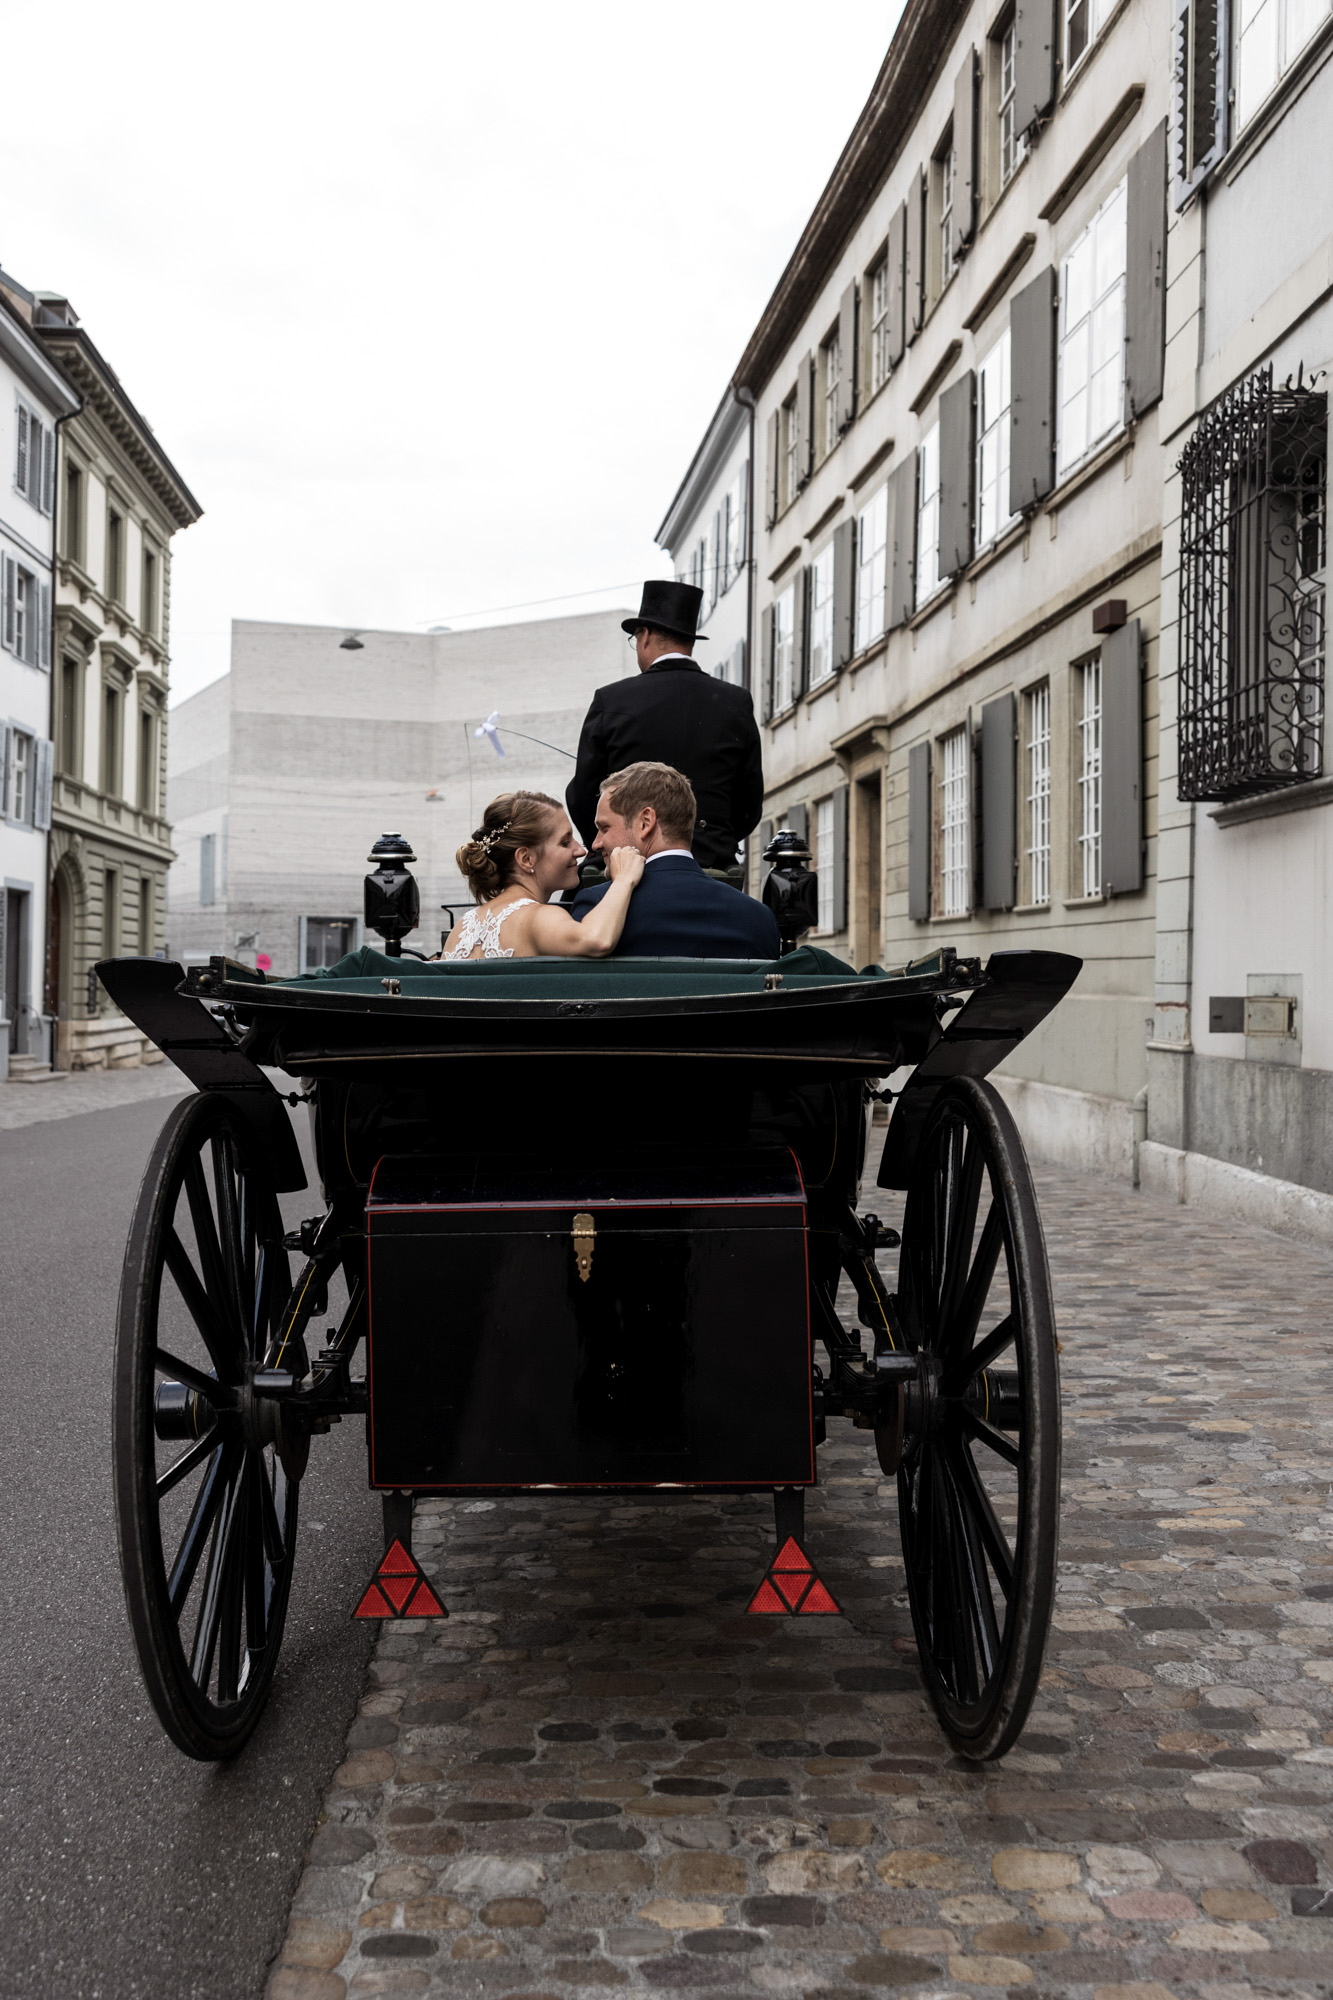 Hochzeit in Binningen - Die Fahrt in der Hochzeitskutsche - Hochzeitsfotograf Basel Schweiz